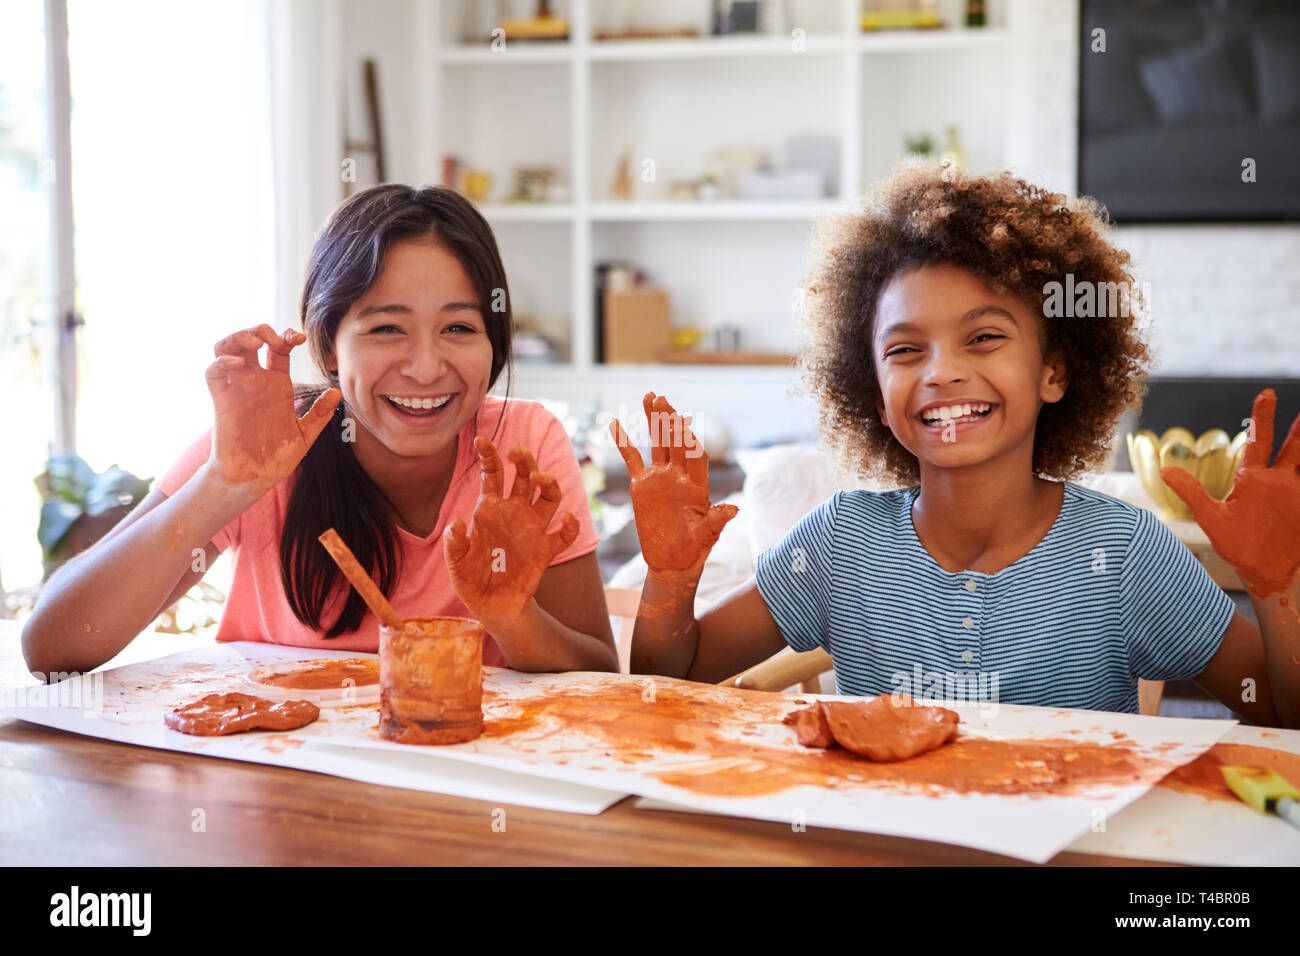 Deux copines s'amusant à jouer avec de la pâte à modeler à la maison, souriant et montrant les mains sales à l'appareil photo, vue de face, Close up Banque D'Images